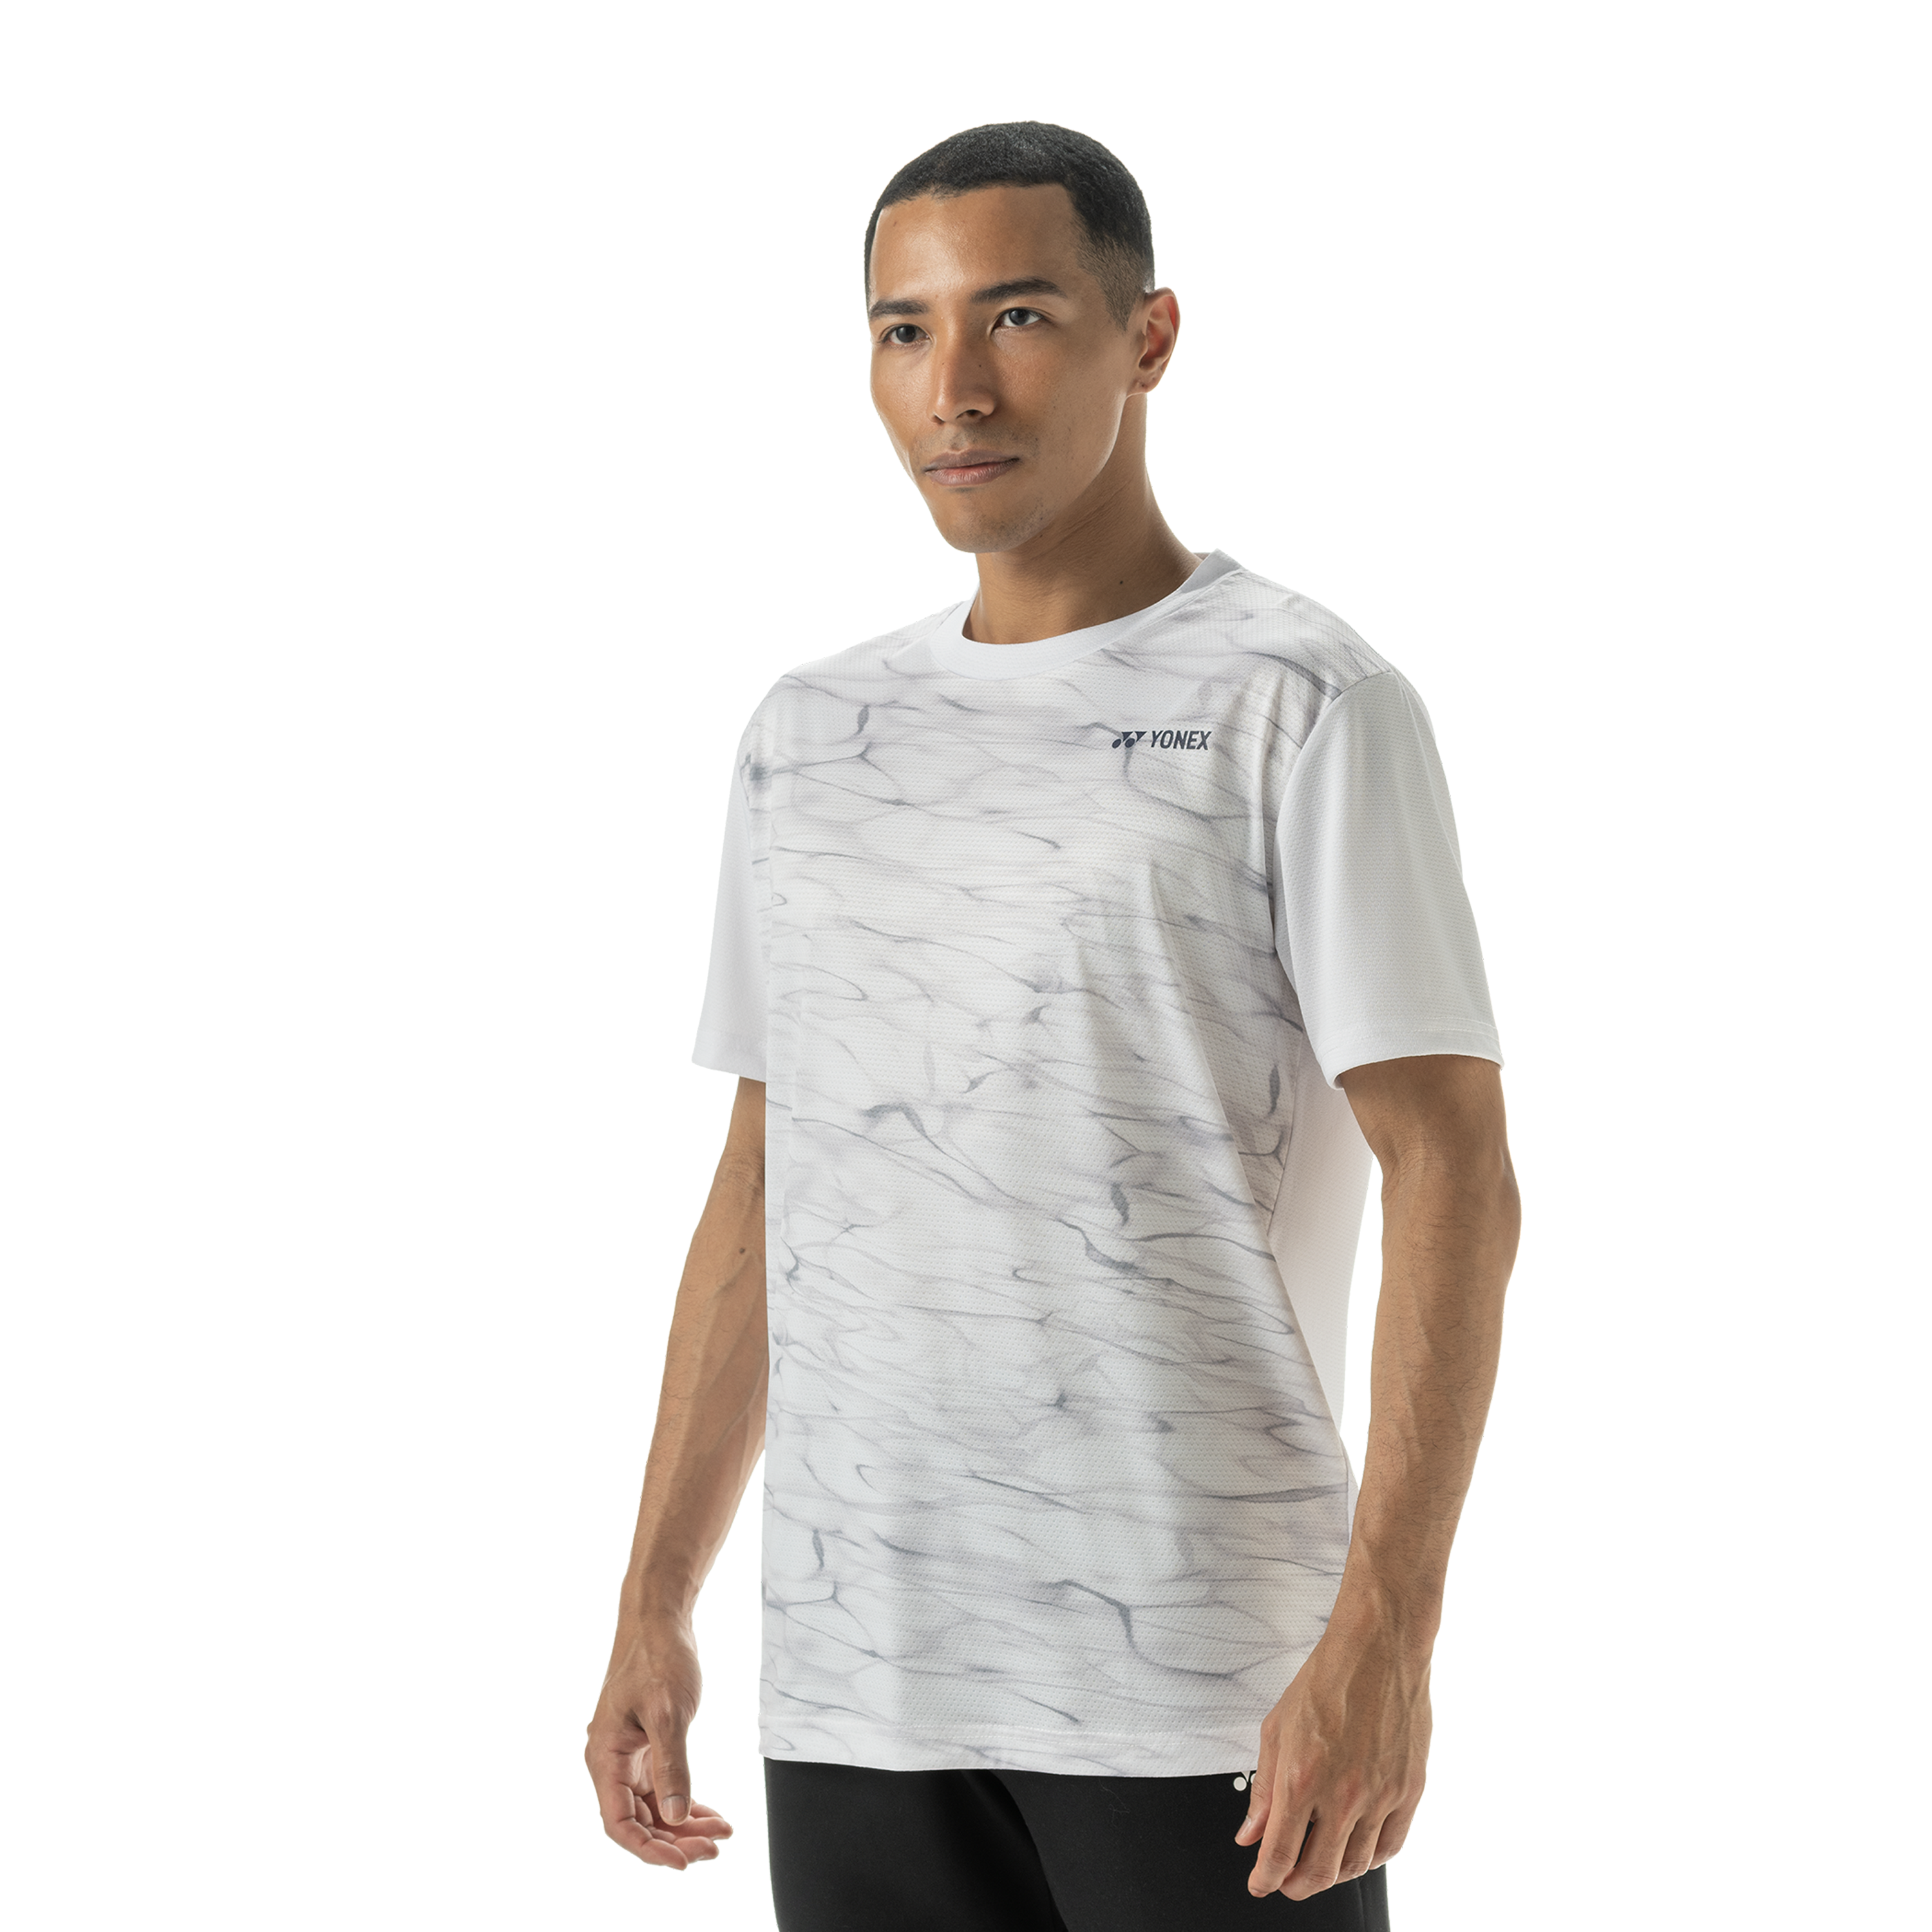 Yonex Badminton/ Tennis Sports Shirt 16639EX White MEN'S